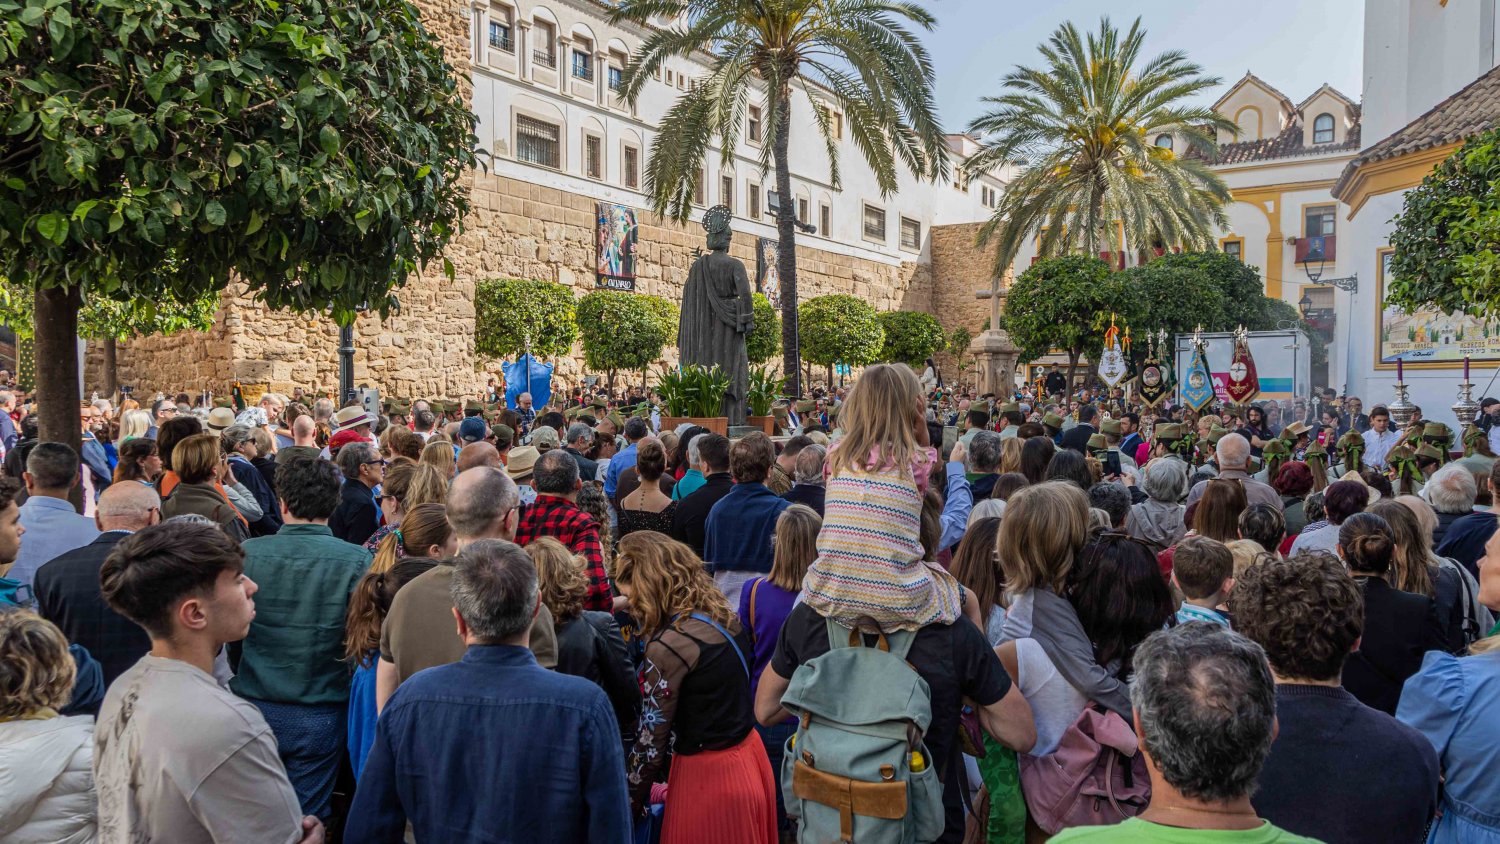 Marbella registra en abril un nuevo récord turístico con una ocupación hotelera del 74,14%